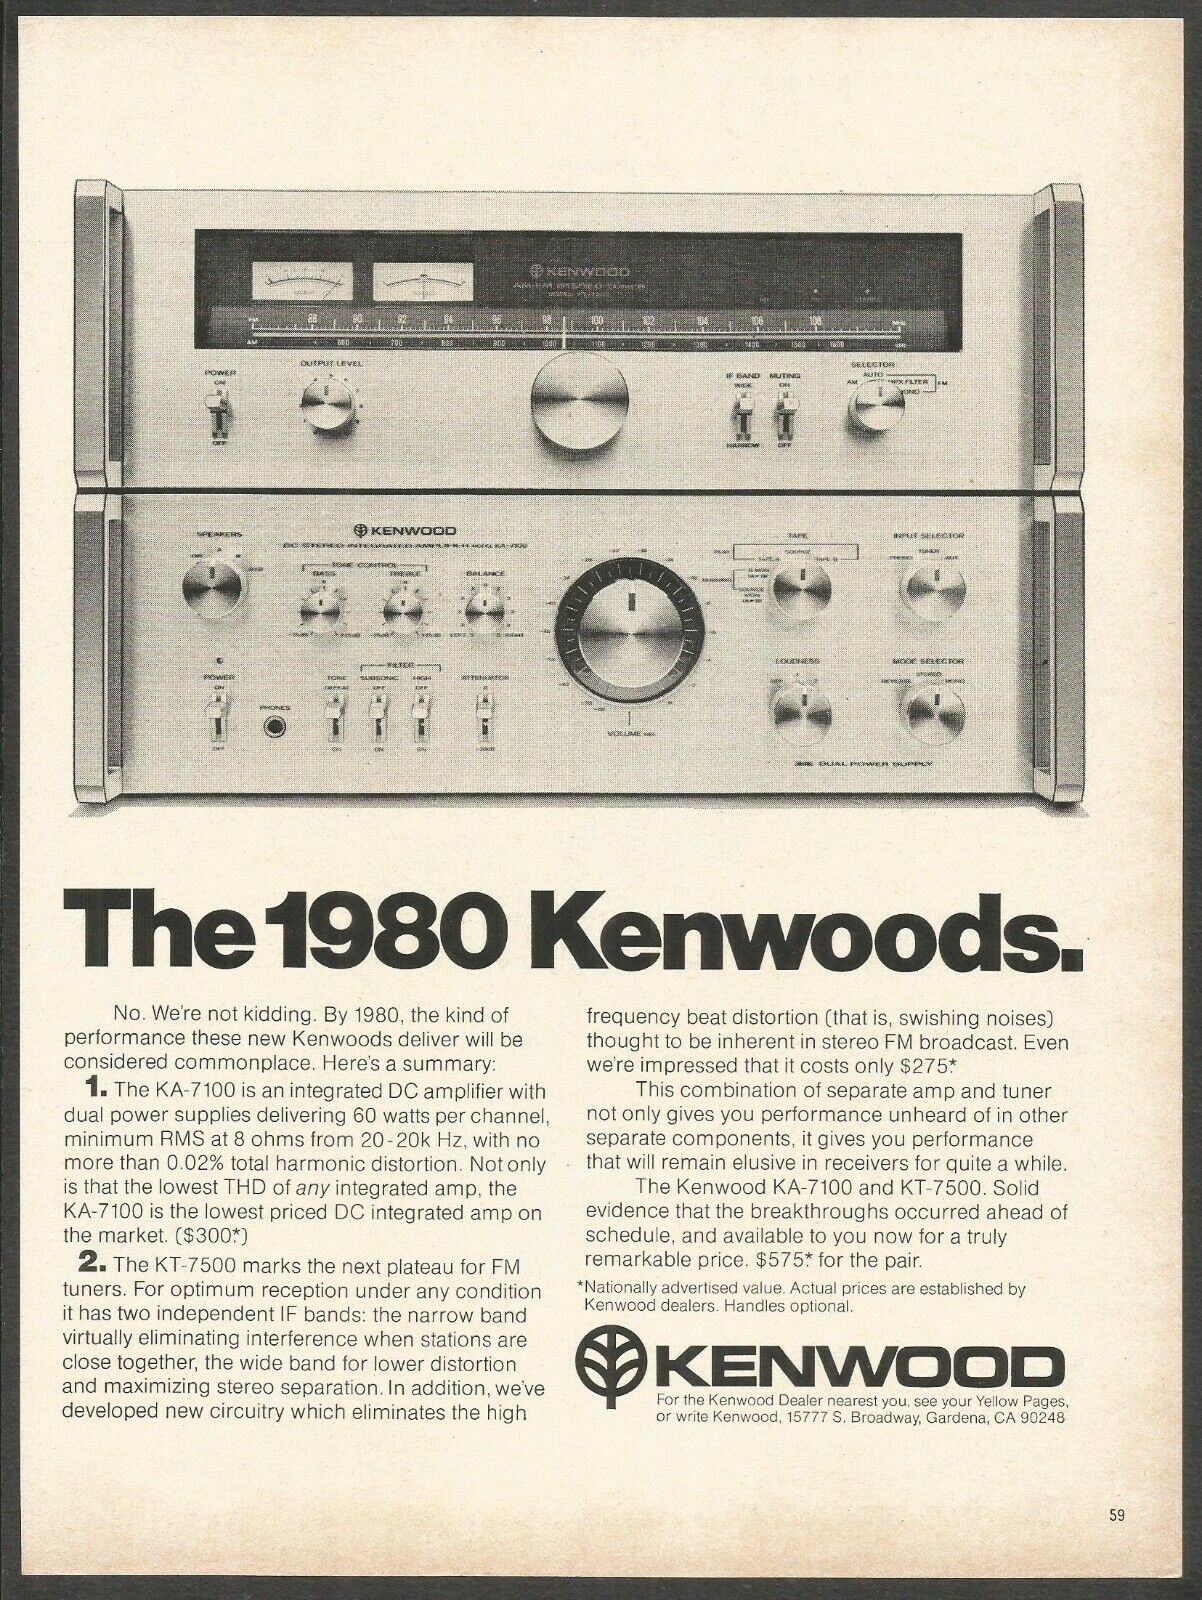 KENWOOD KA-7100 Amplifier and KT7500 FM Tuner - 1978 Vintage Print Ad